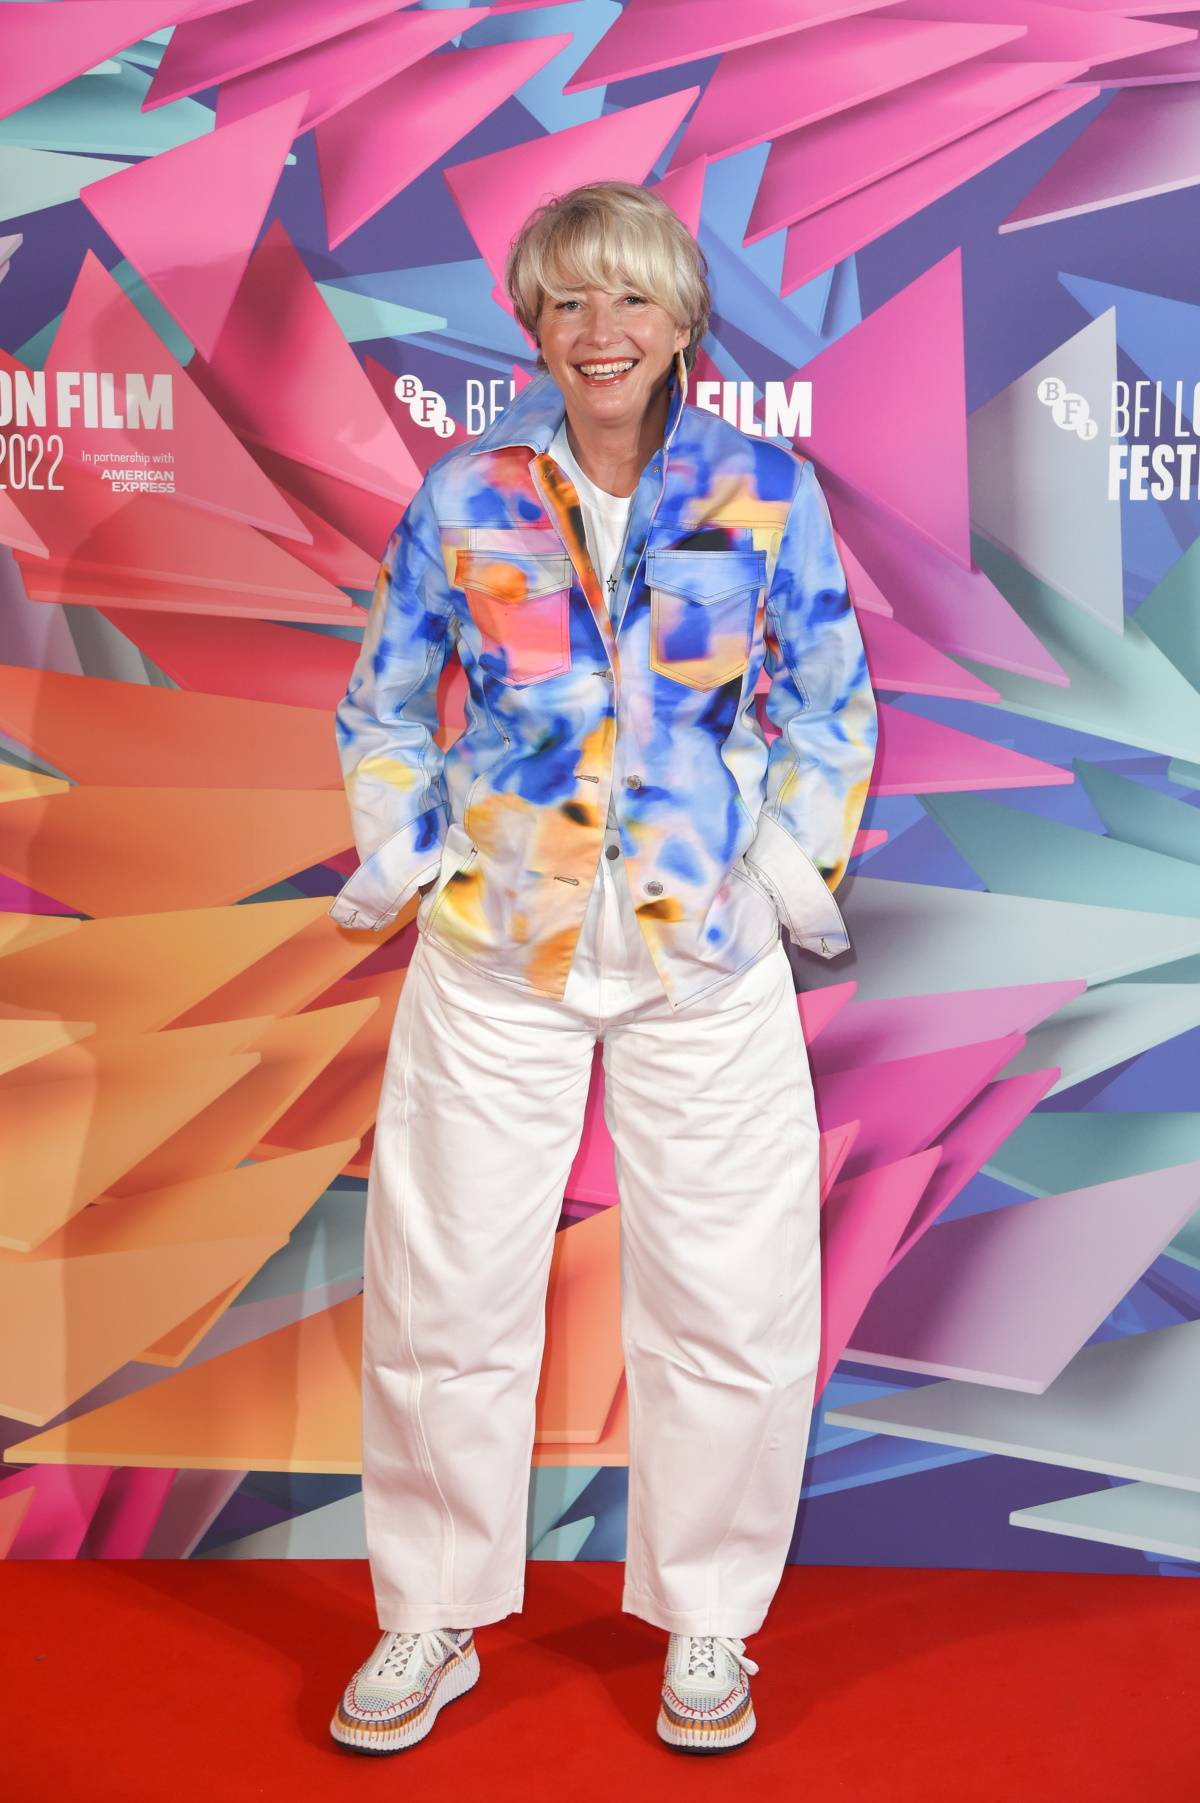 Aktorka na premierze filmu „Matylda: Musical”, która odbyła się podczas 66. BFI London Film Festival